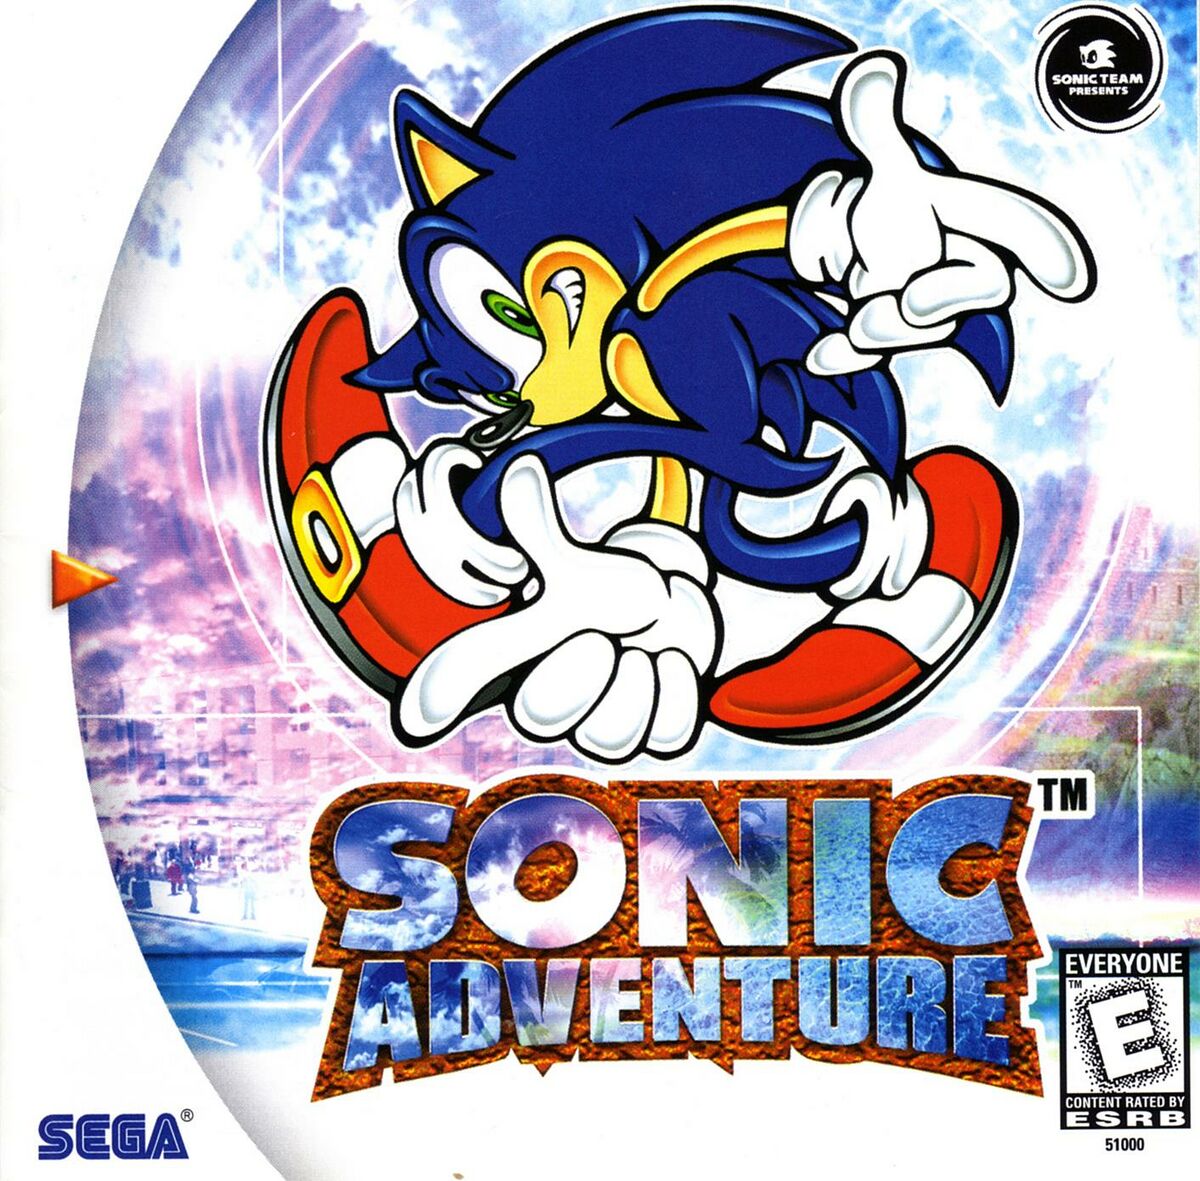 Sonic Advance 2 - Wikipedia